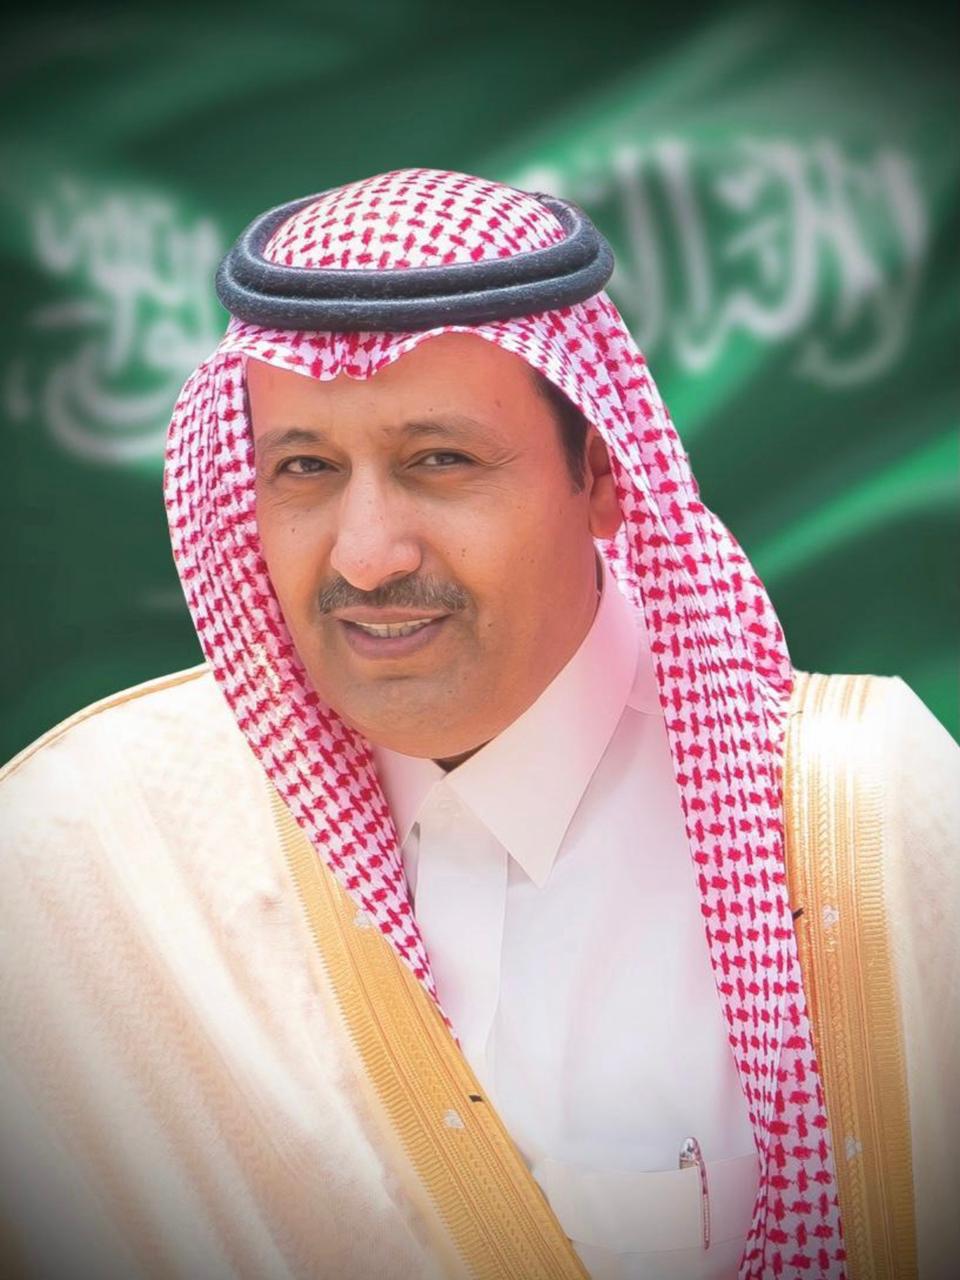 أمير منطقة الباحة : لقاء سمو ولي العهد يؤكد اعتزازنا بوطننا